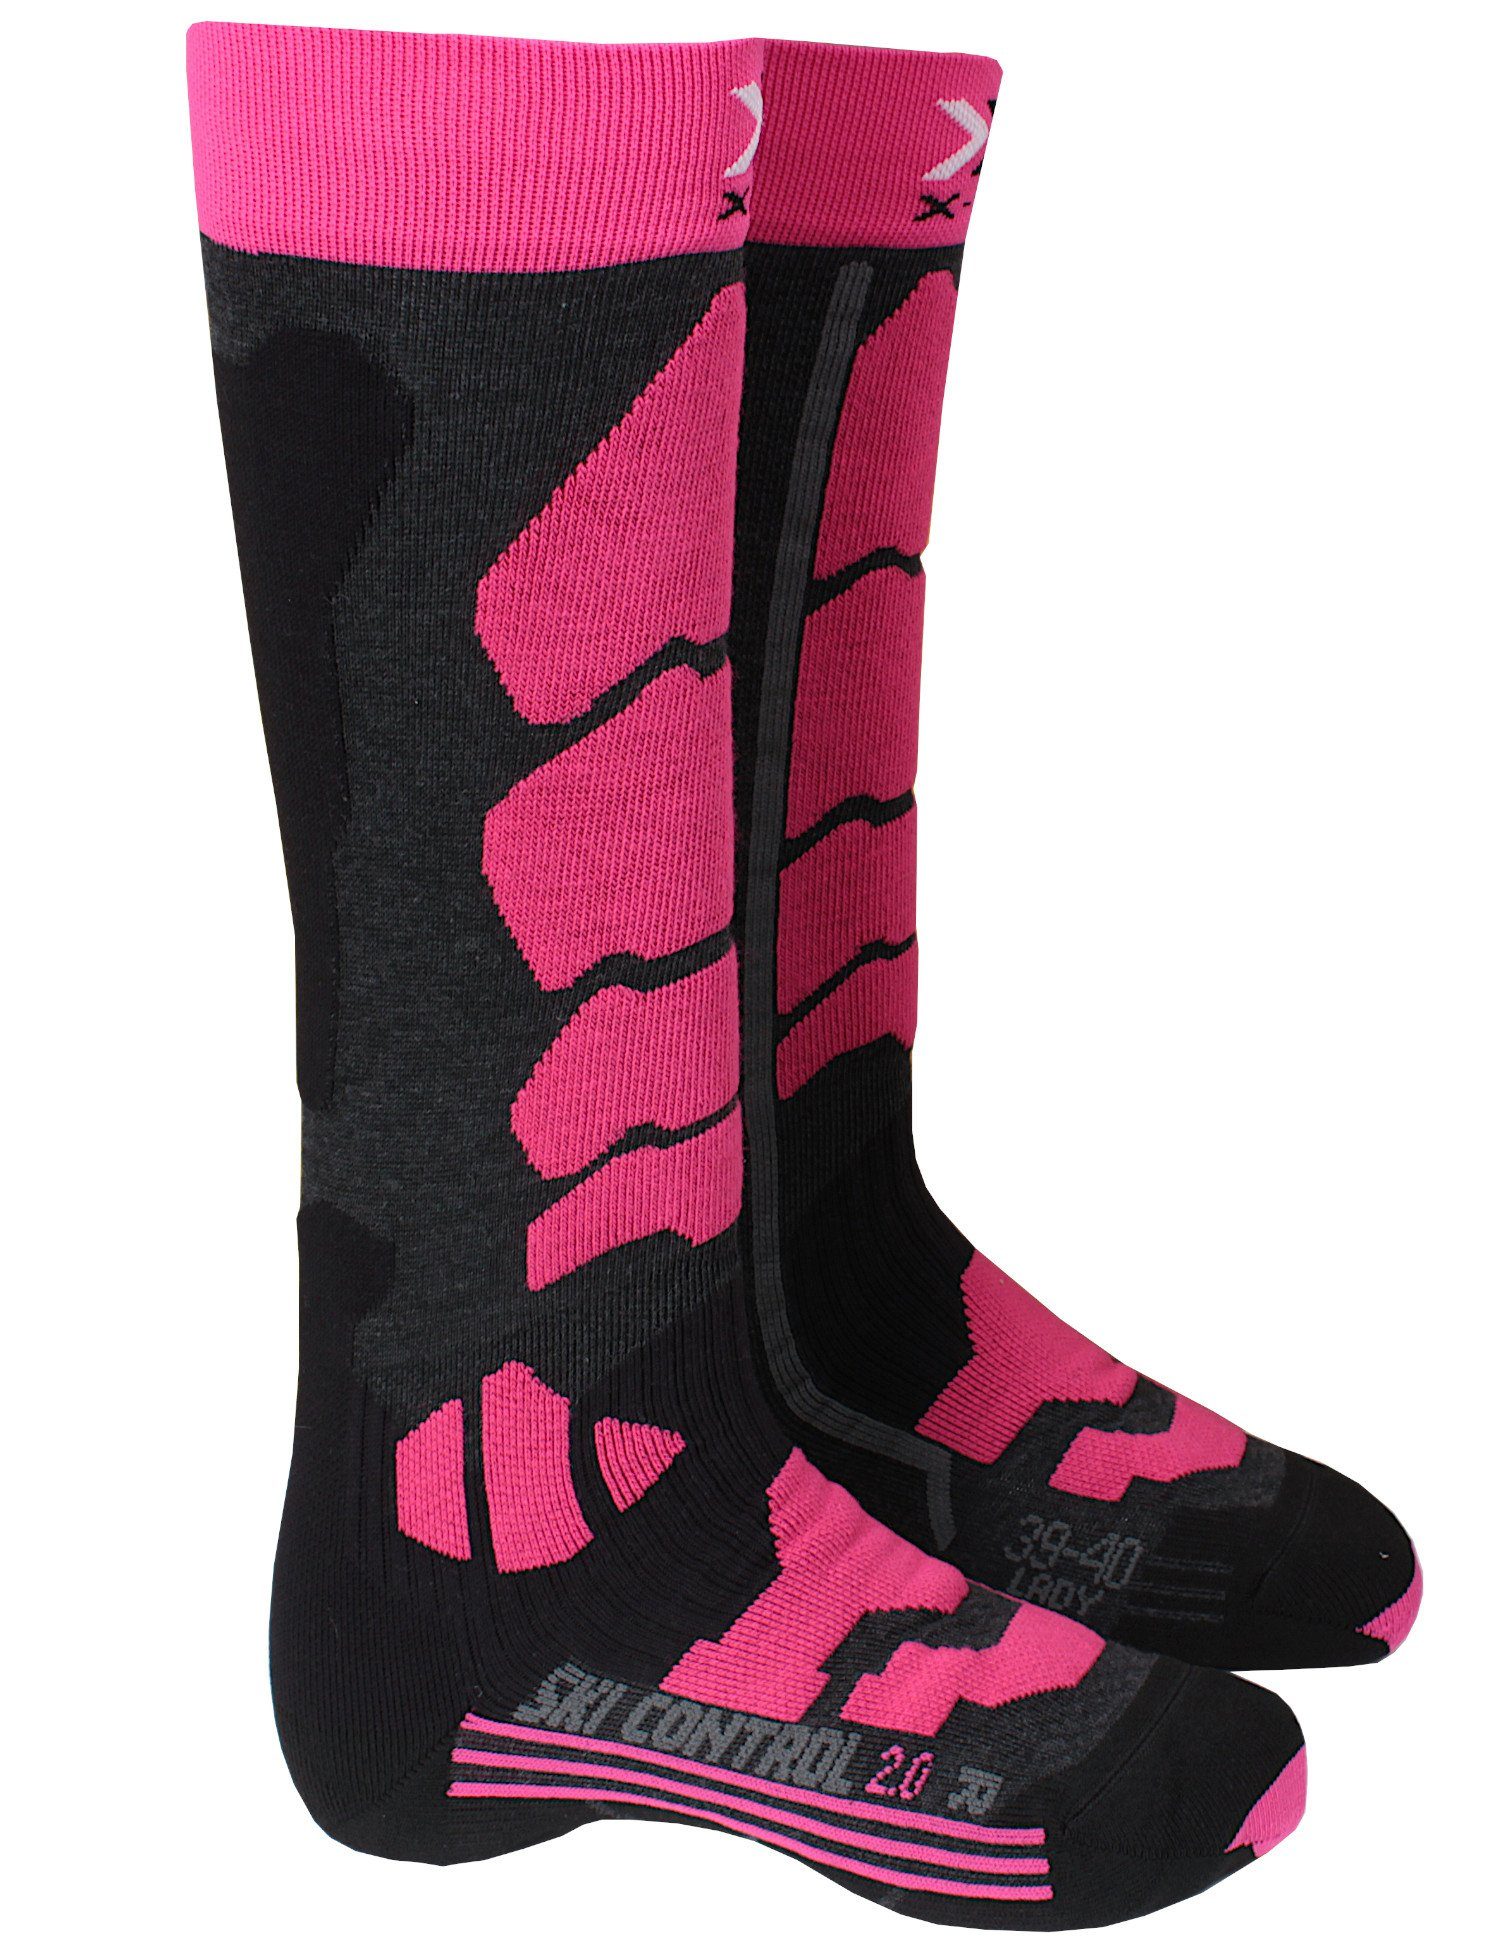 X-Socks Skisocken Ski Control 2.0 Women gepolsterte Dämpfungszonen pink-schwarz